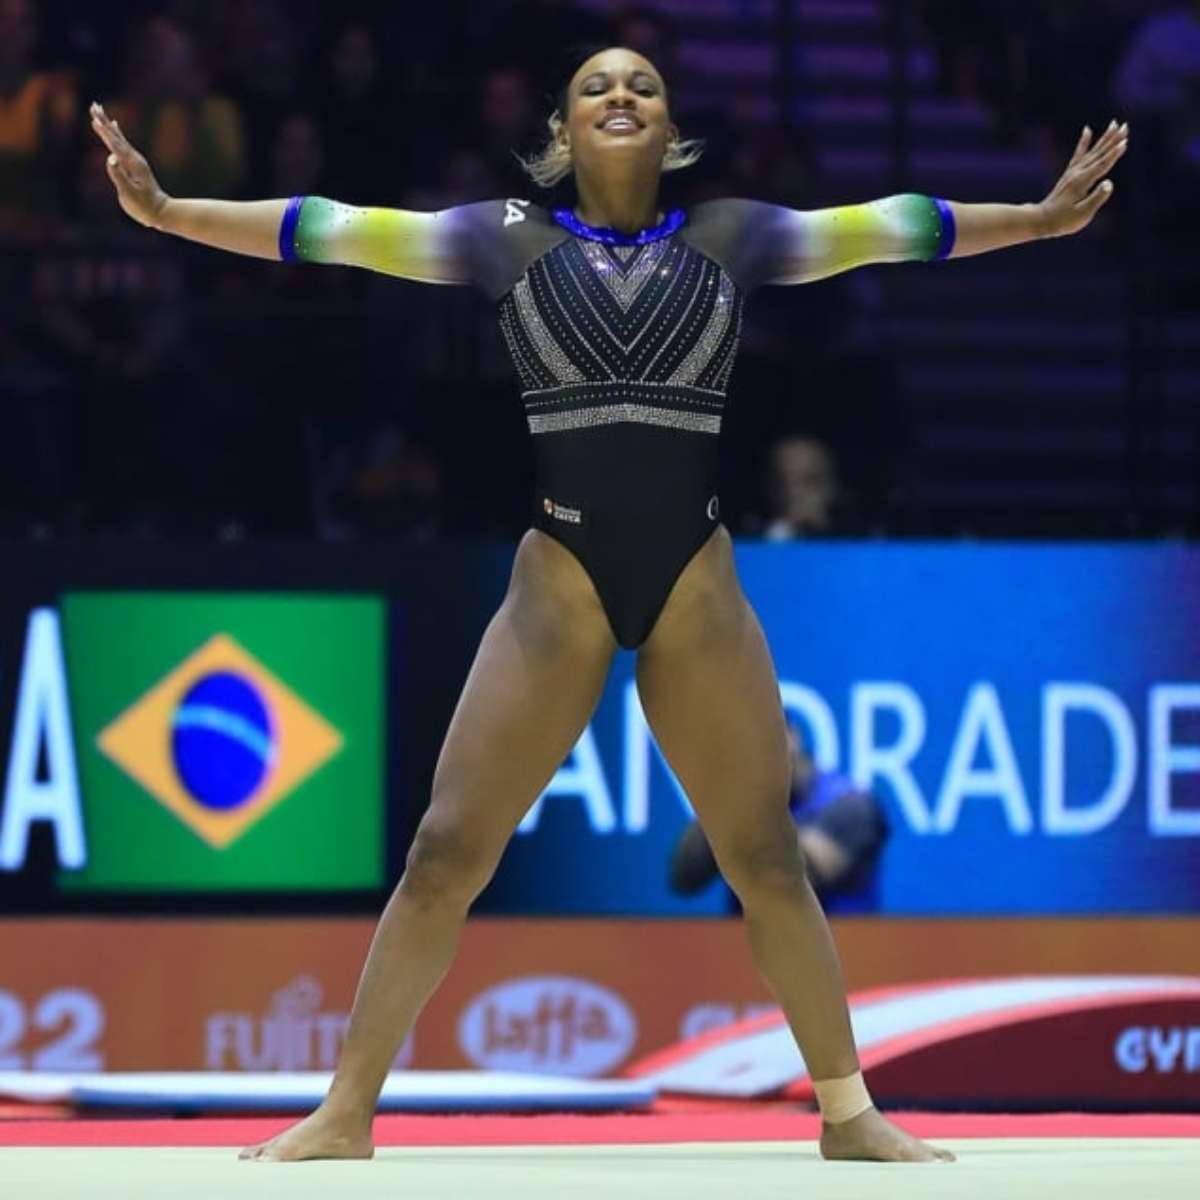 Rebeca Andrade é bronze no trave no Mundial de Ginástica